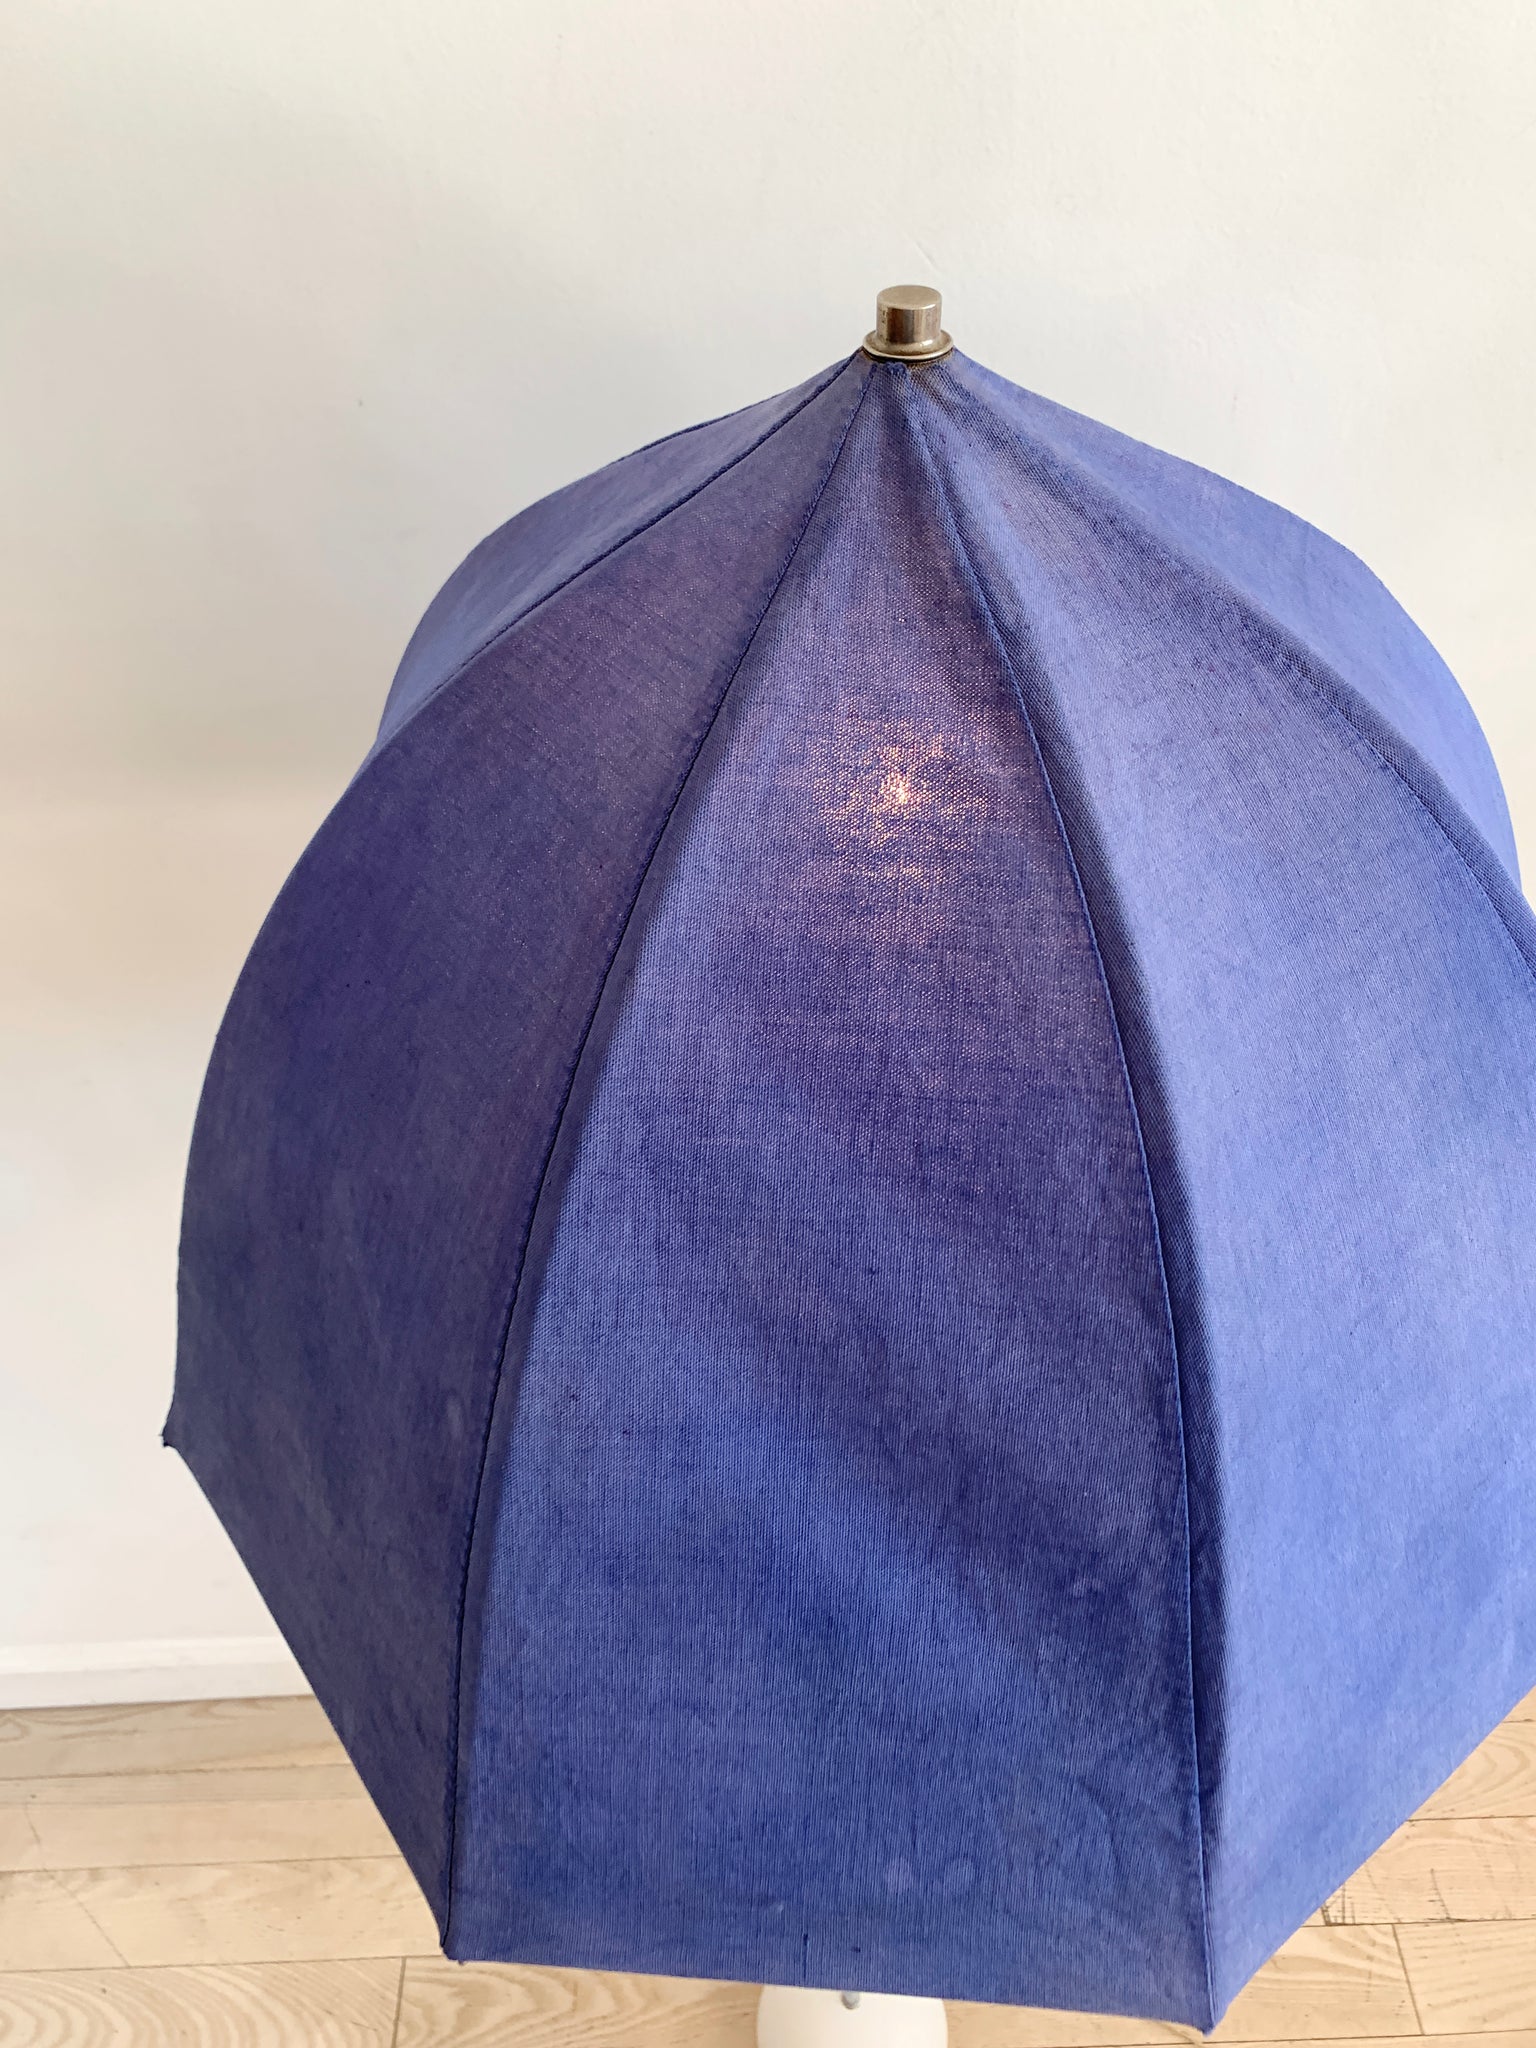 1975 Lavender George Kovacs Umbrella Floor Lamp